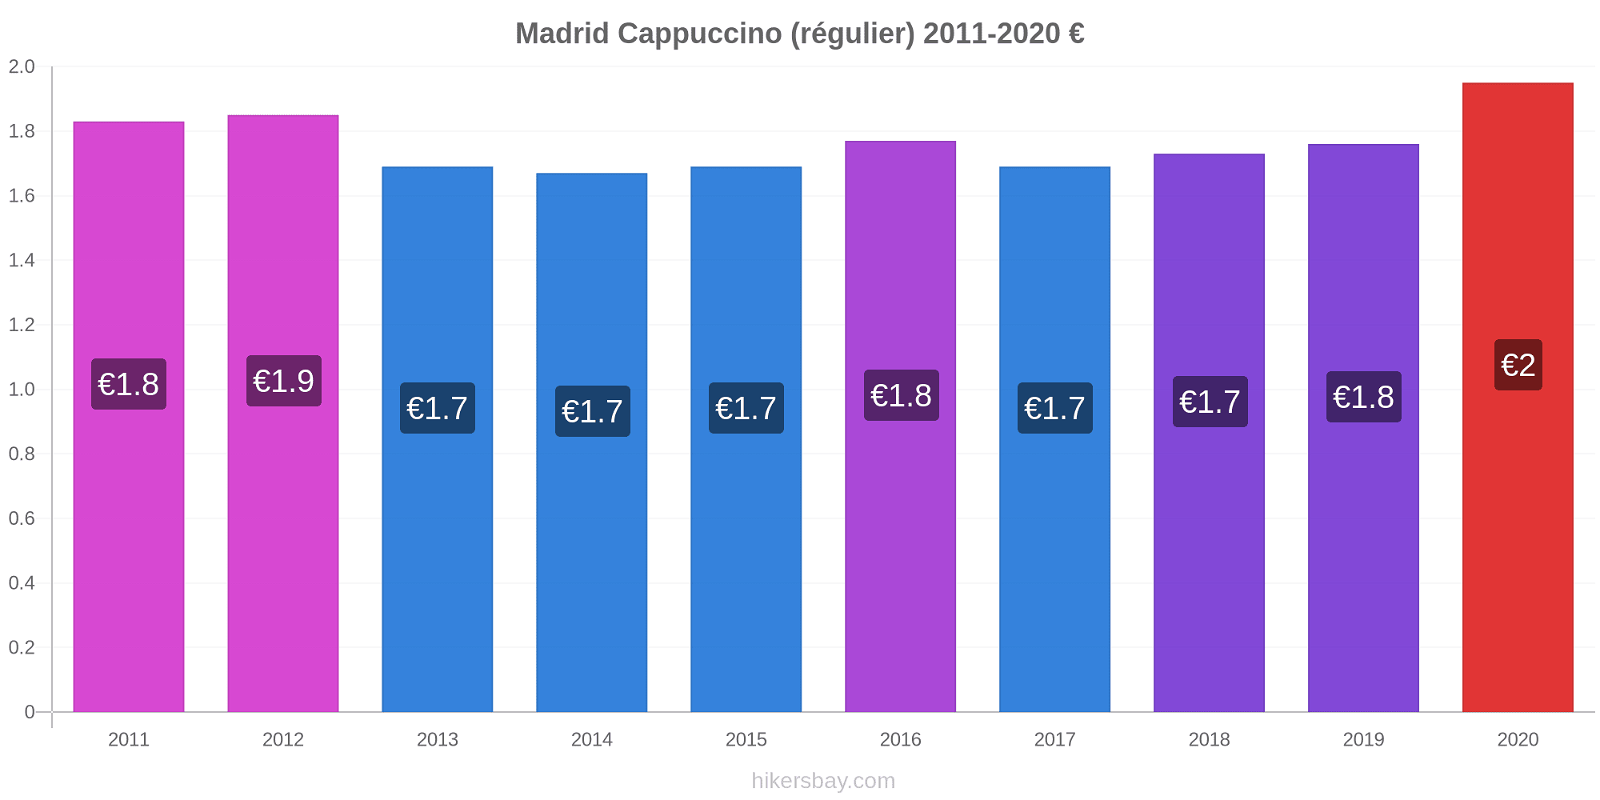 Madrid changements de prix Cappuccino (régulier) hikersbay.com